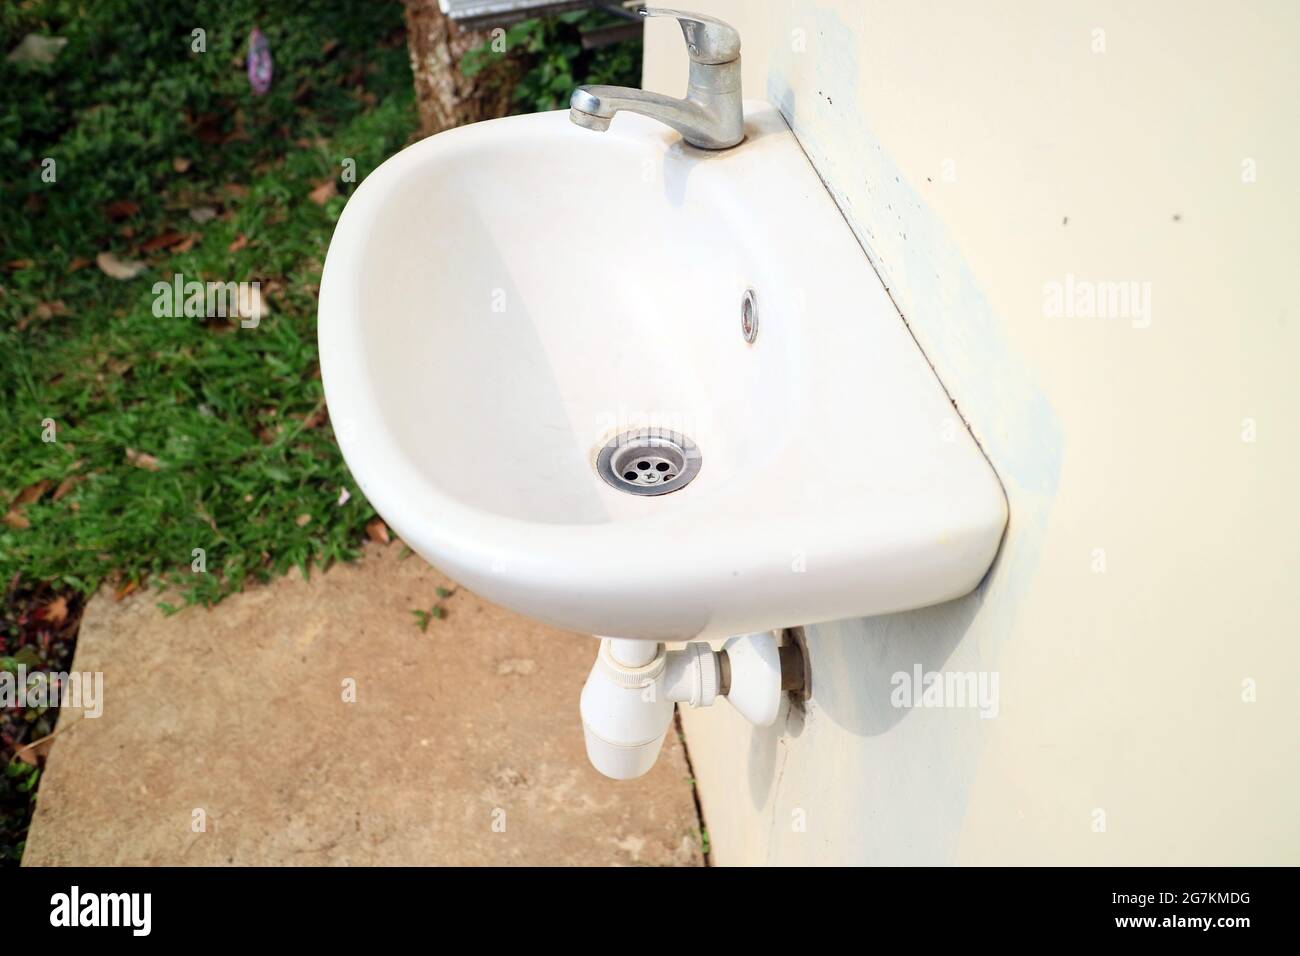 lavabo blanco contra la pared en una foto del jardín Fotografía de stock -  Alamy